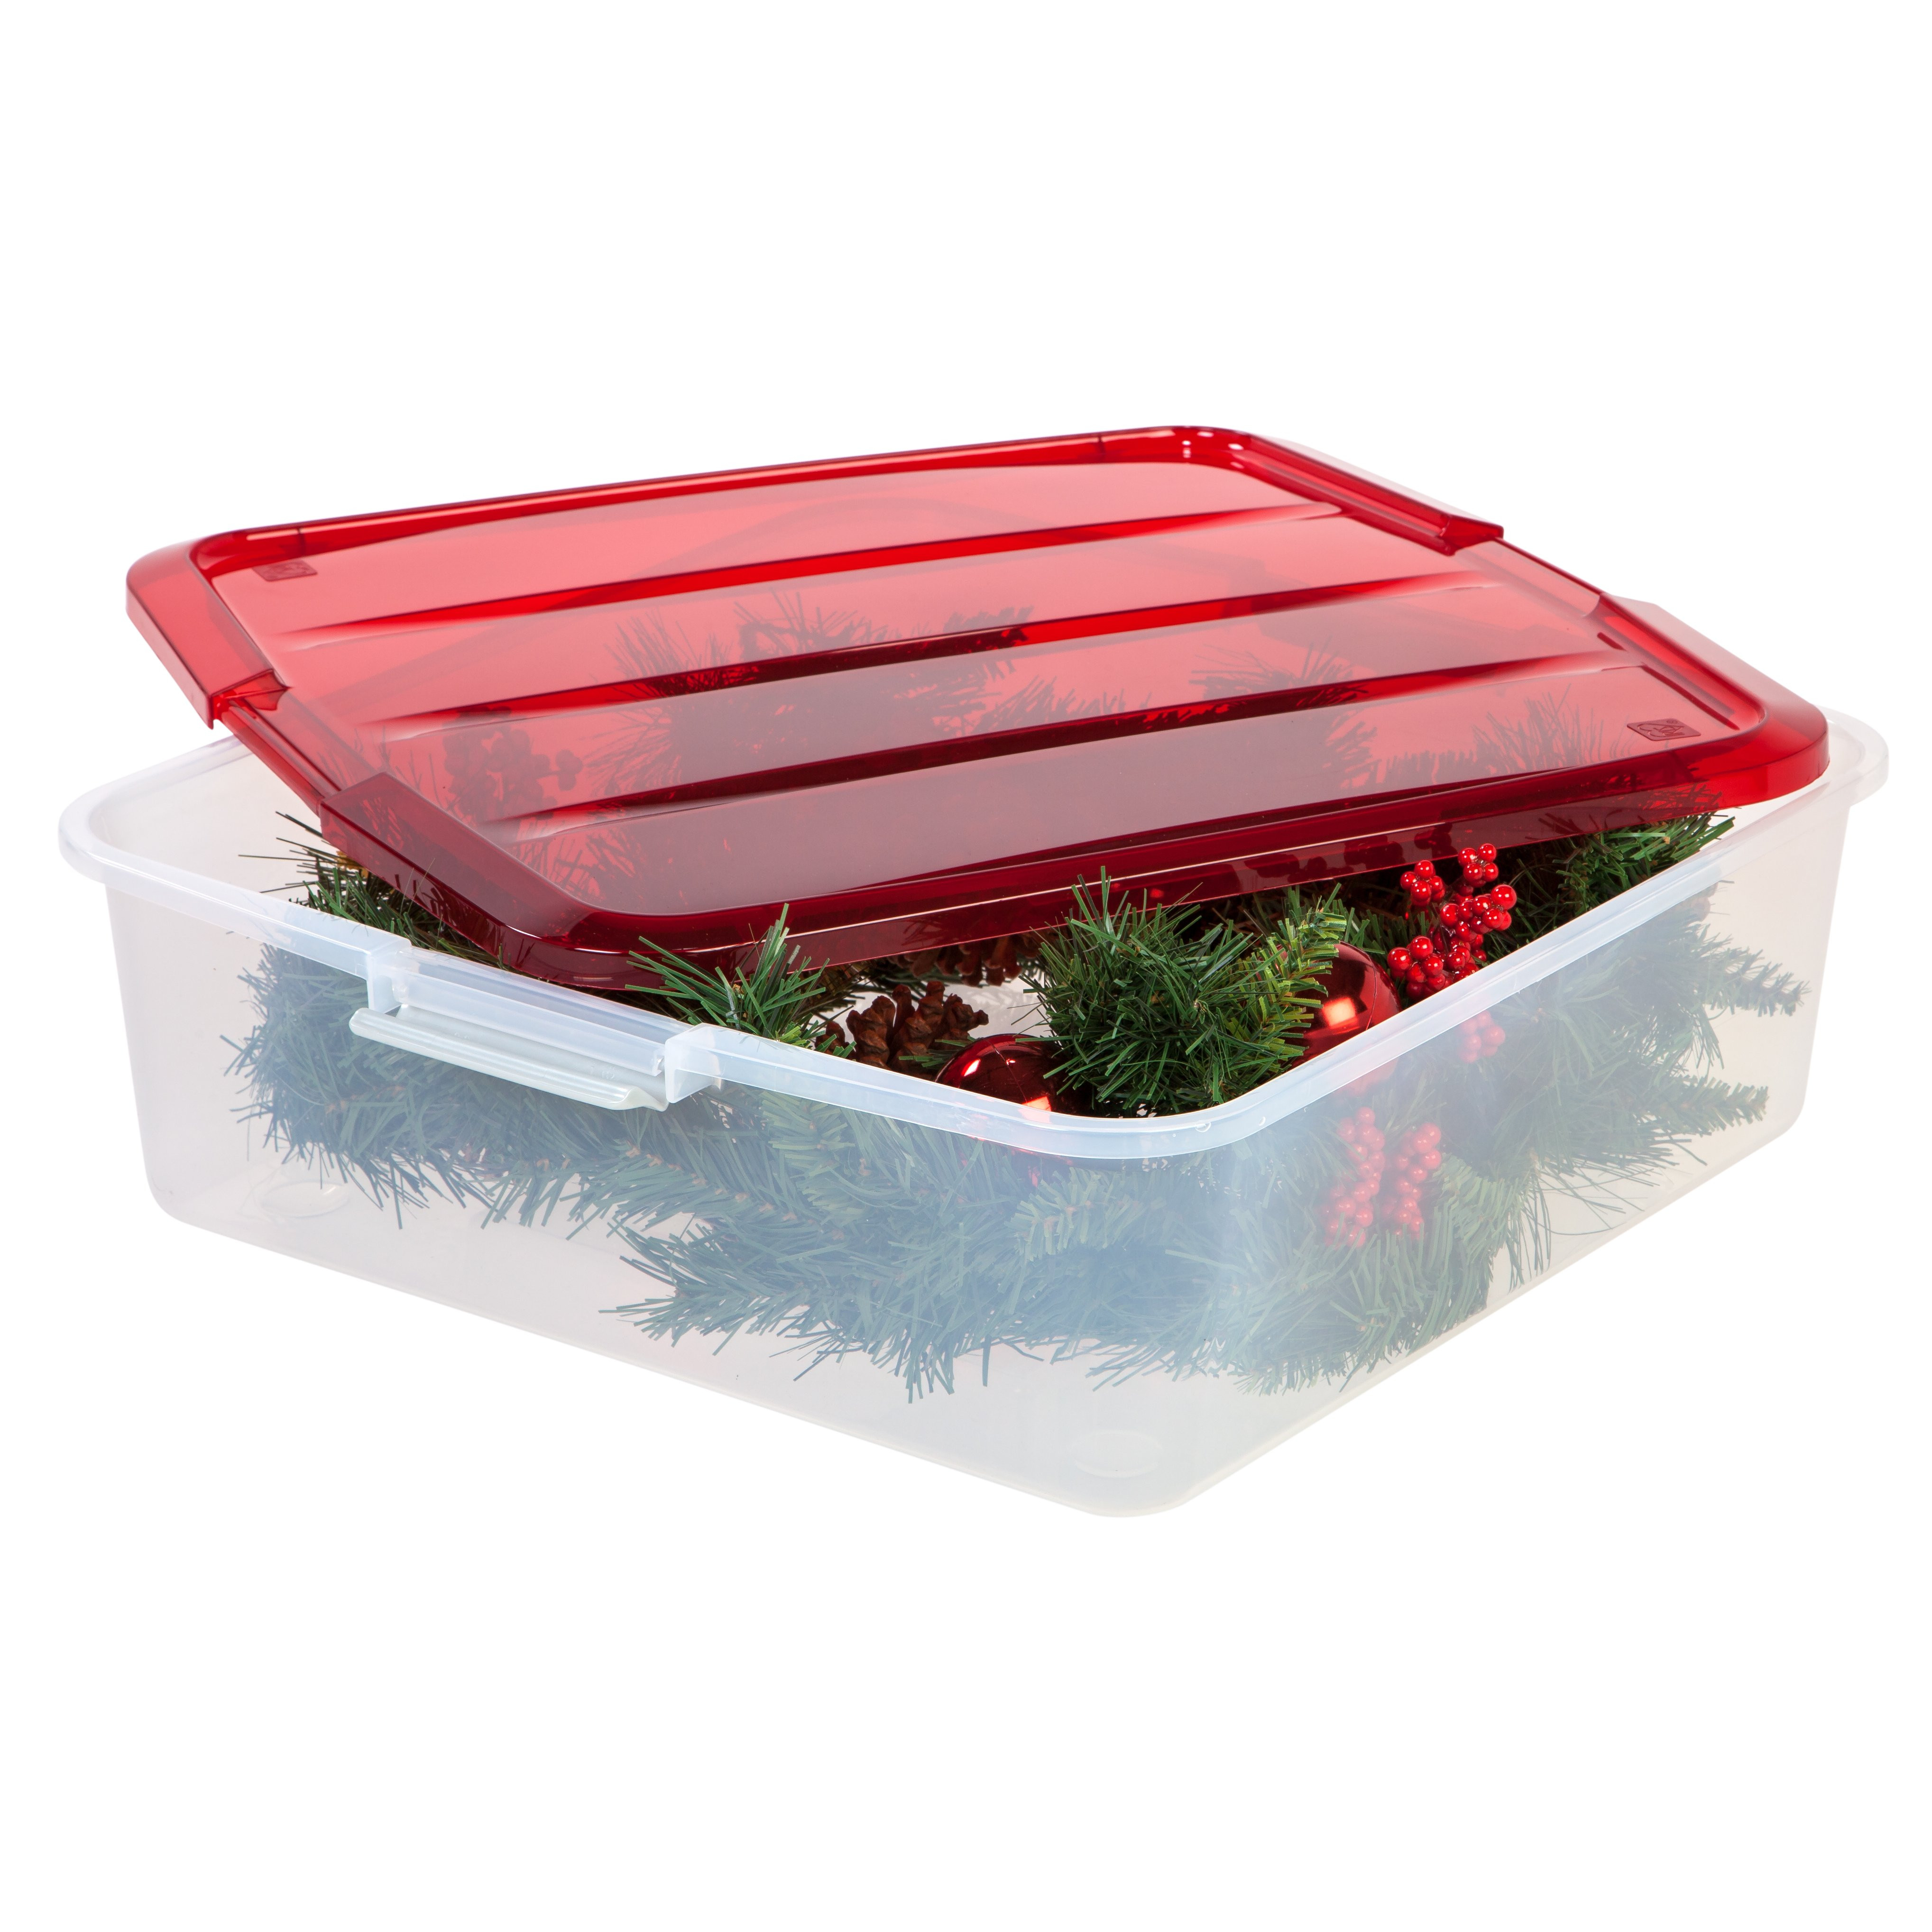 Iris Christmas Tree Storage Box
 IRIS 20" Wreath Storage Box & Reviews